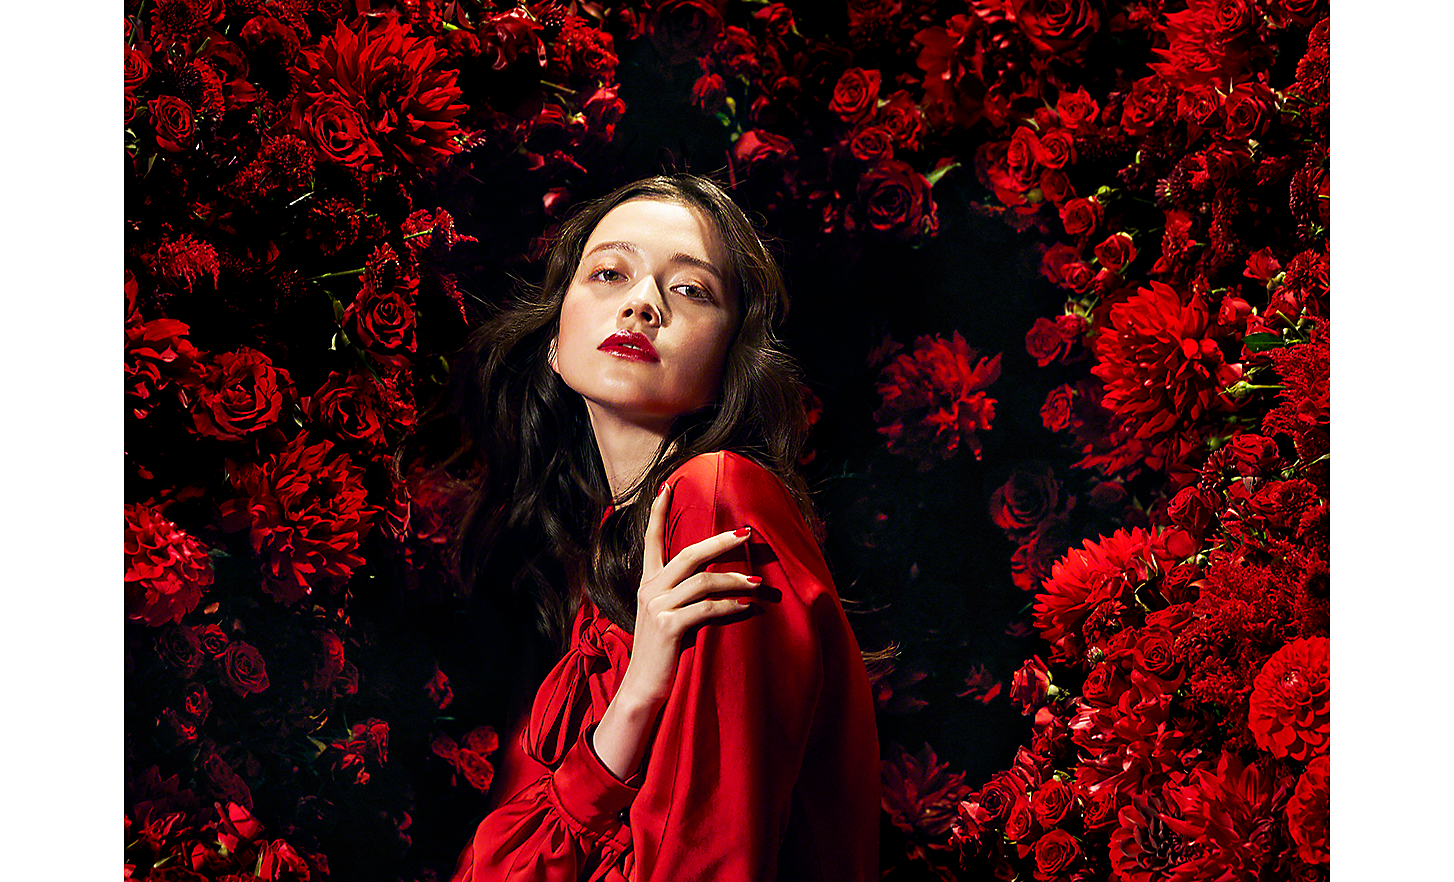 Instantánea de 125 mm de una mujer vestida de rojo rodeada de flores rojas